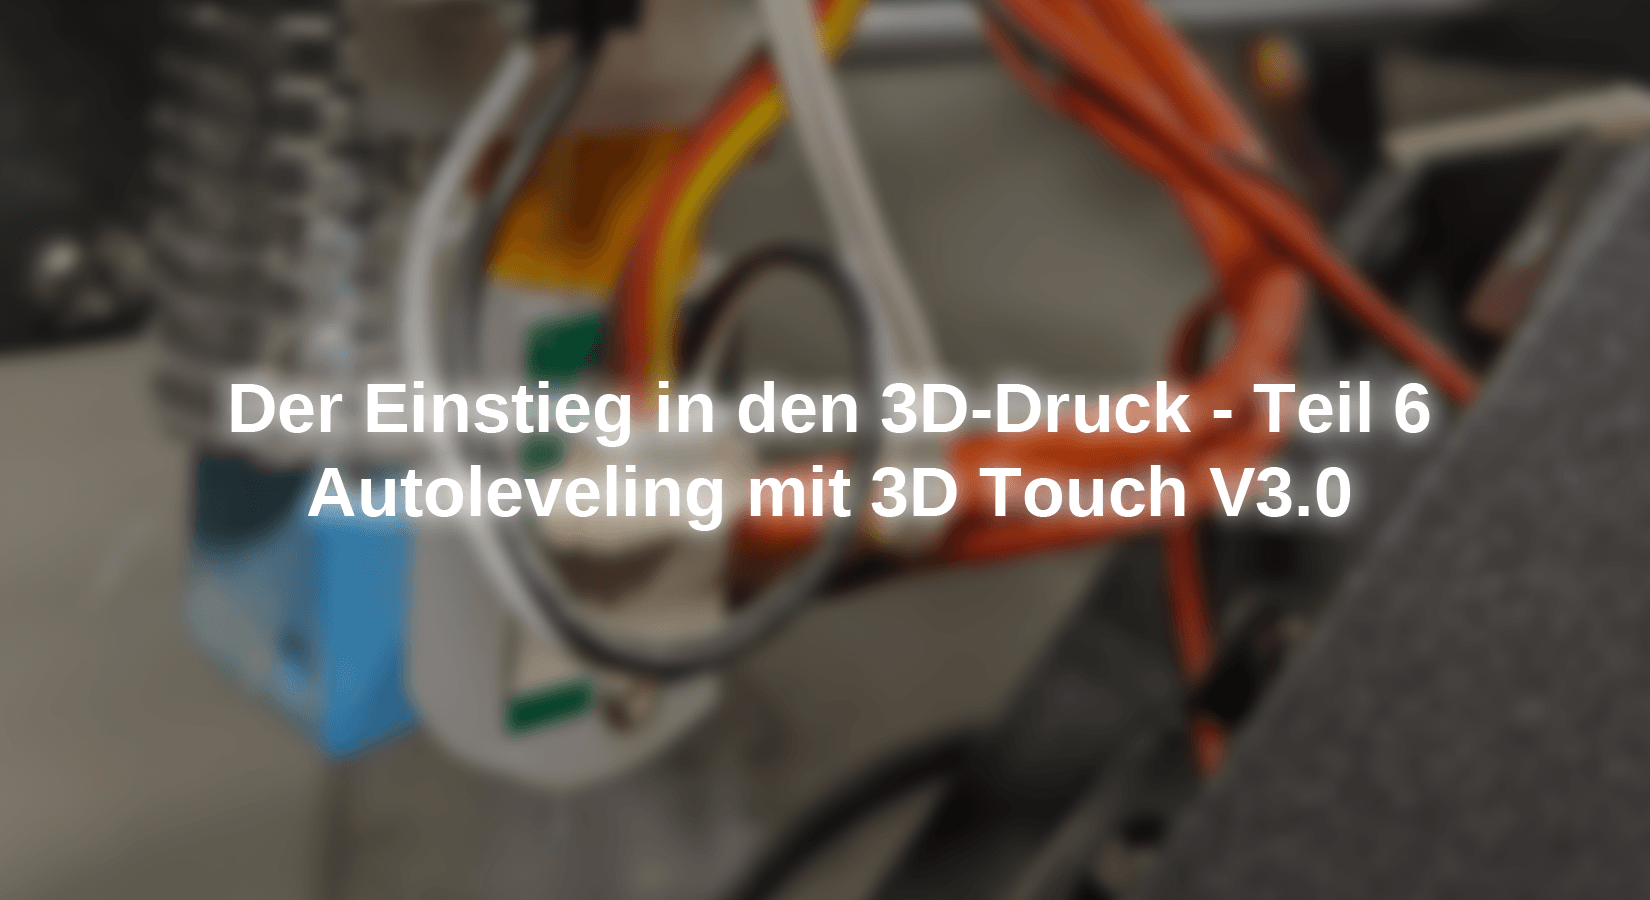 Der Einstieg in den 3D-Druck - Teil 6 - Autoleveling mit 3D Touch V3.0 - AZ-Delivery